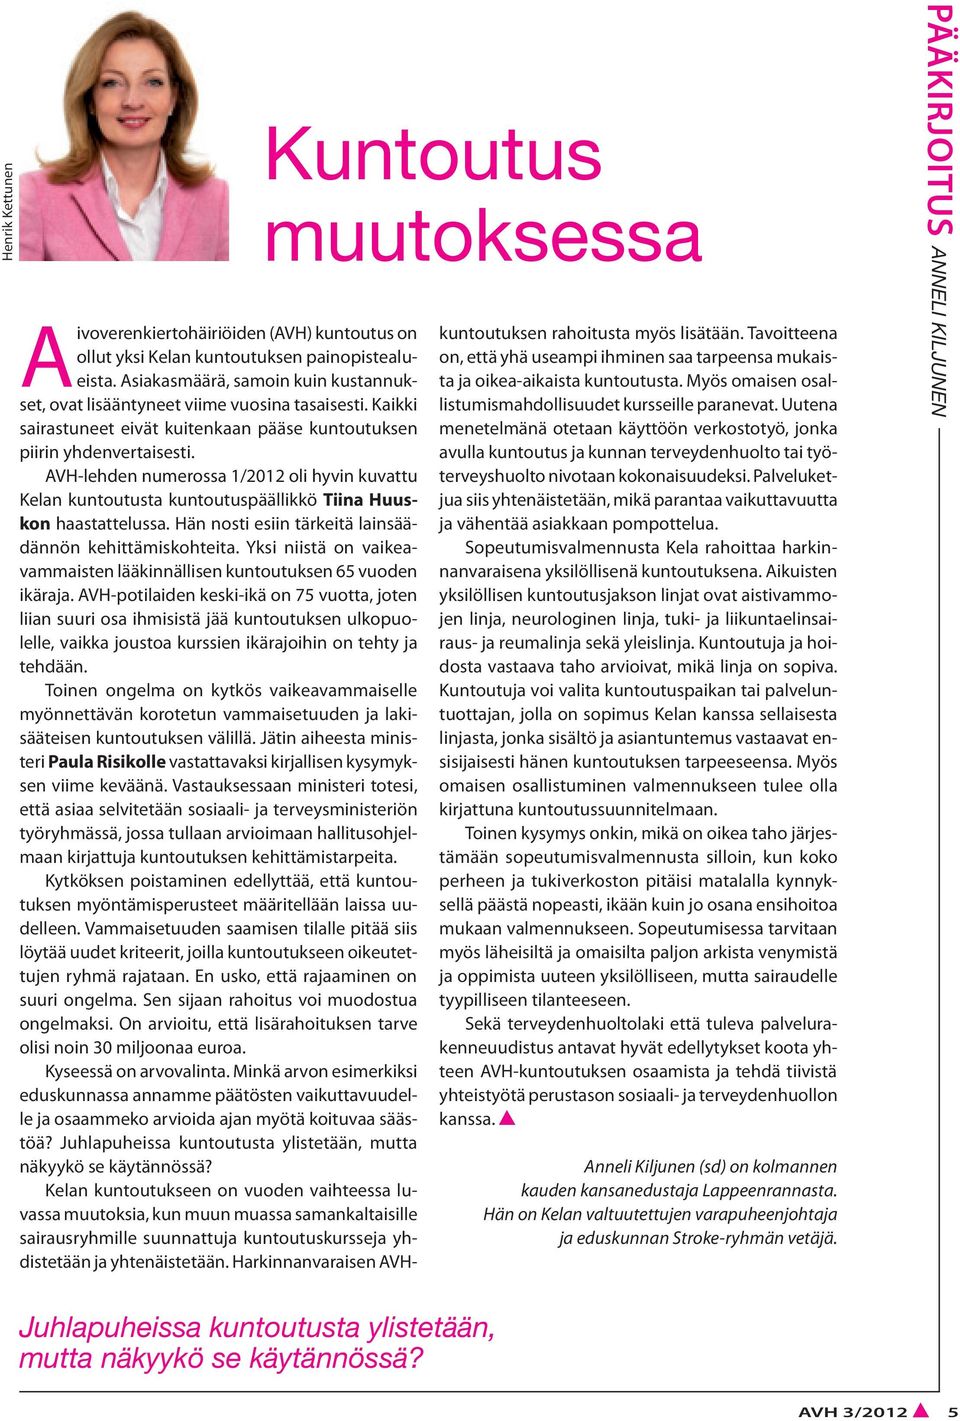 AVH-lehden numerossa 1/2012 oli hyvin kuvattu Kelan kuntoutusta kuntoutuspäällikkö Tiina Huuskon haastattelussa. Hän nosti esiin tärkeitä lainsäädännön kehittämiskohteita.